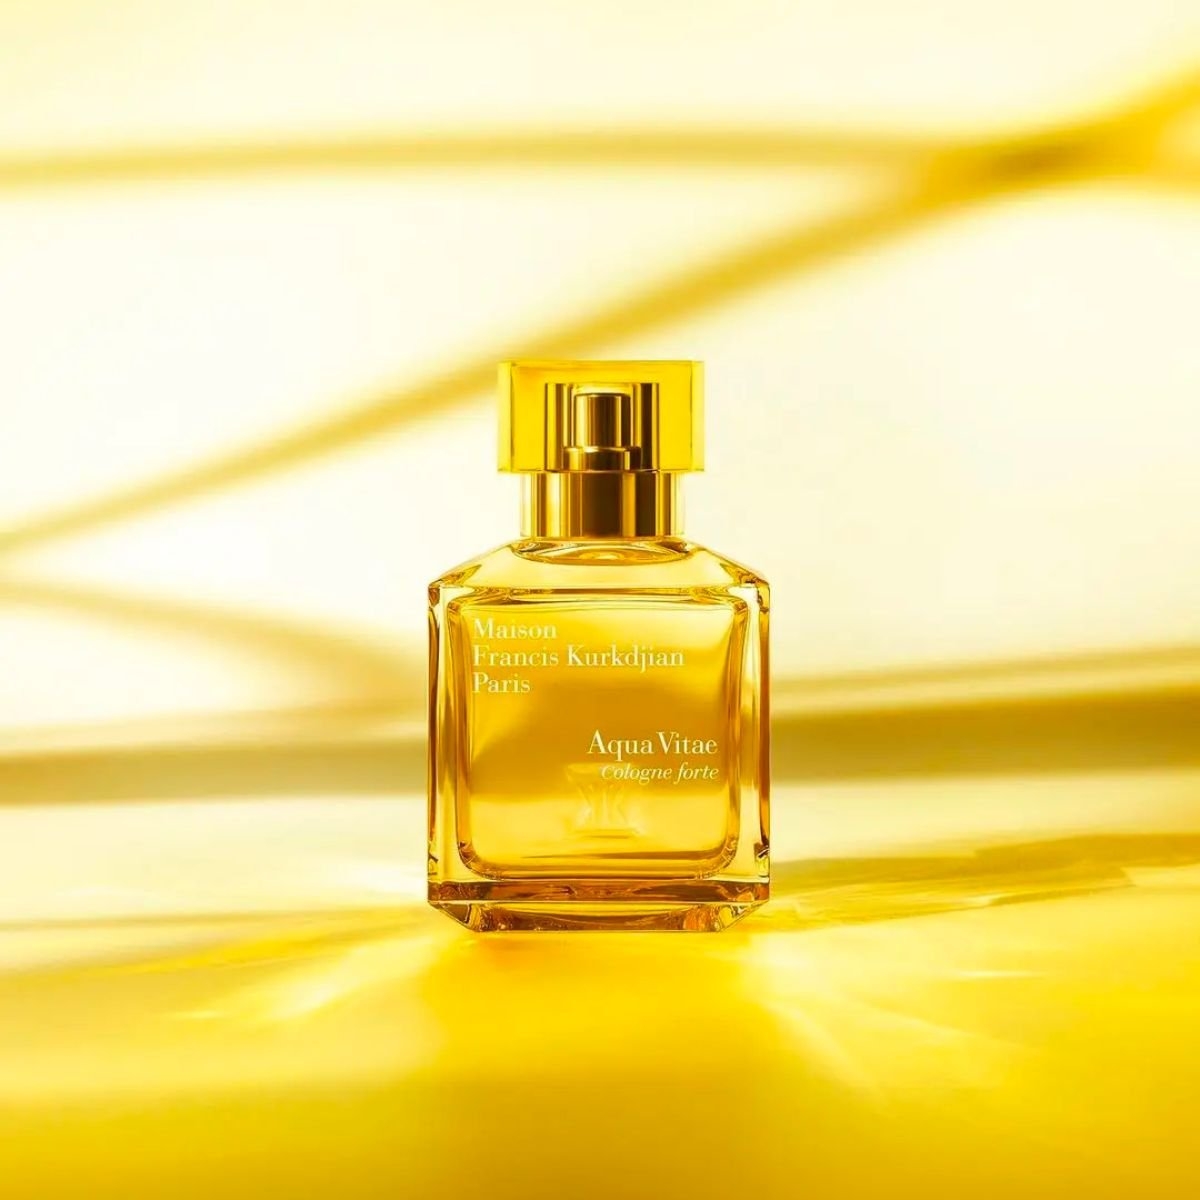 Image of the perfume Aqua Vitae Cologne Forte by the brand Maison Francis Kurkdjian